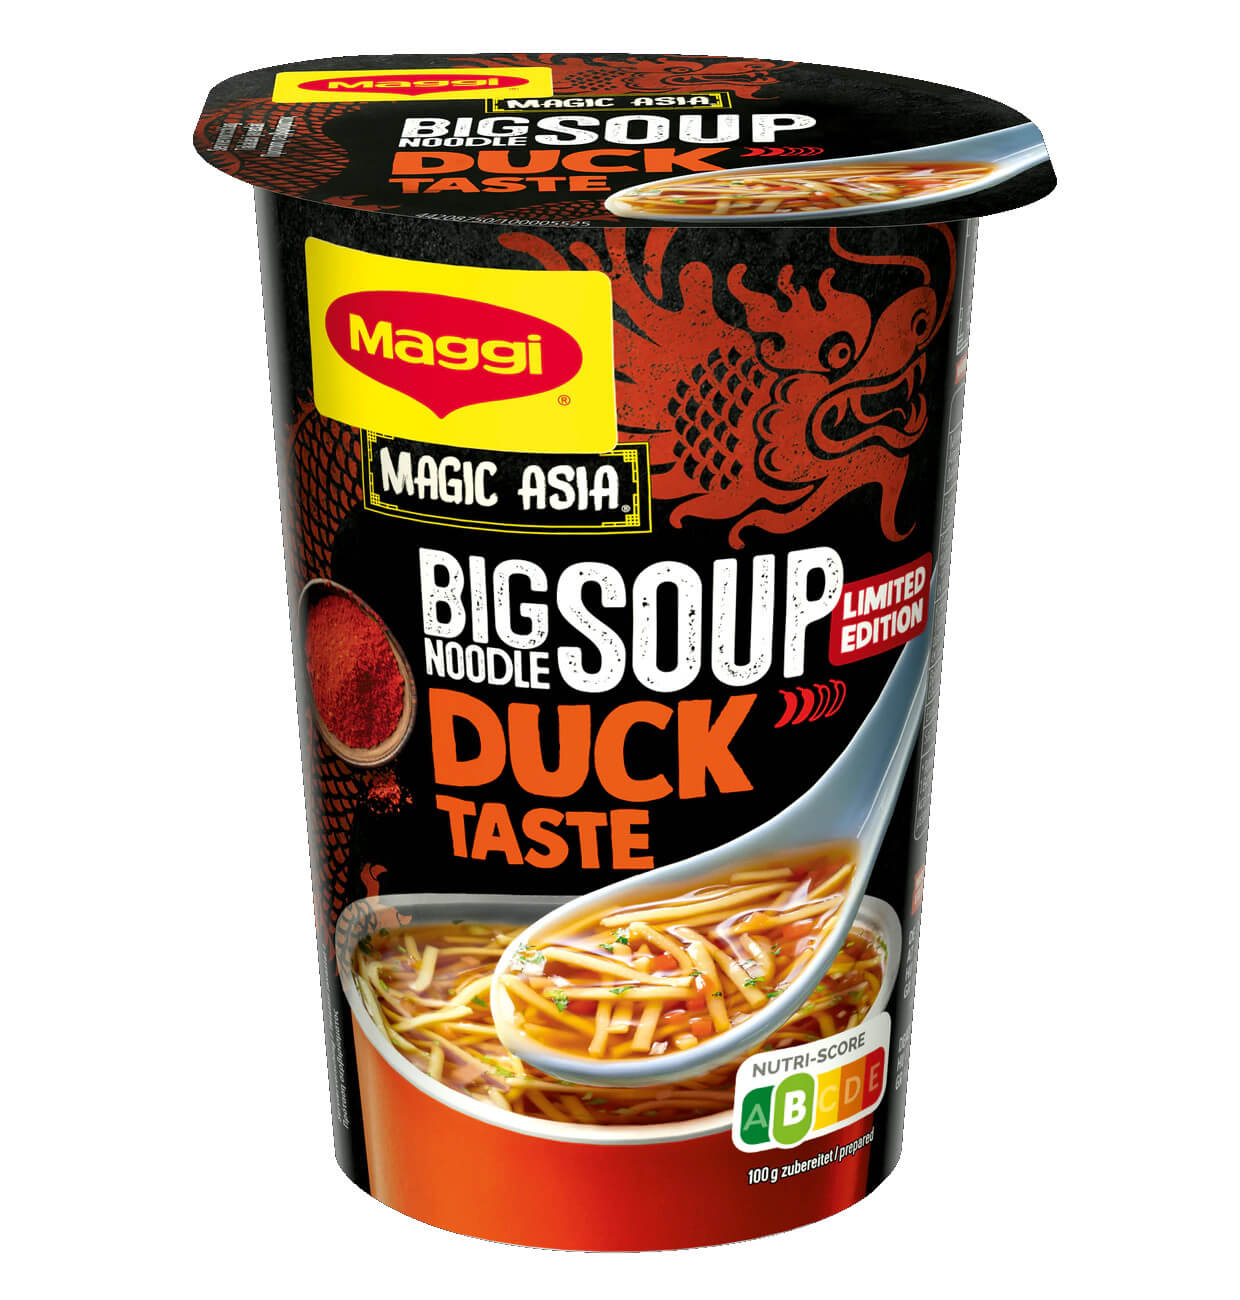 Magic Asia Big Noodle Soup - Duck Taste 78g